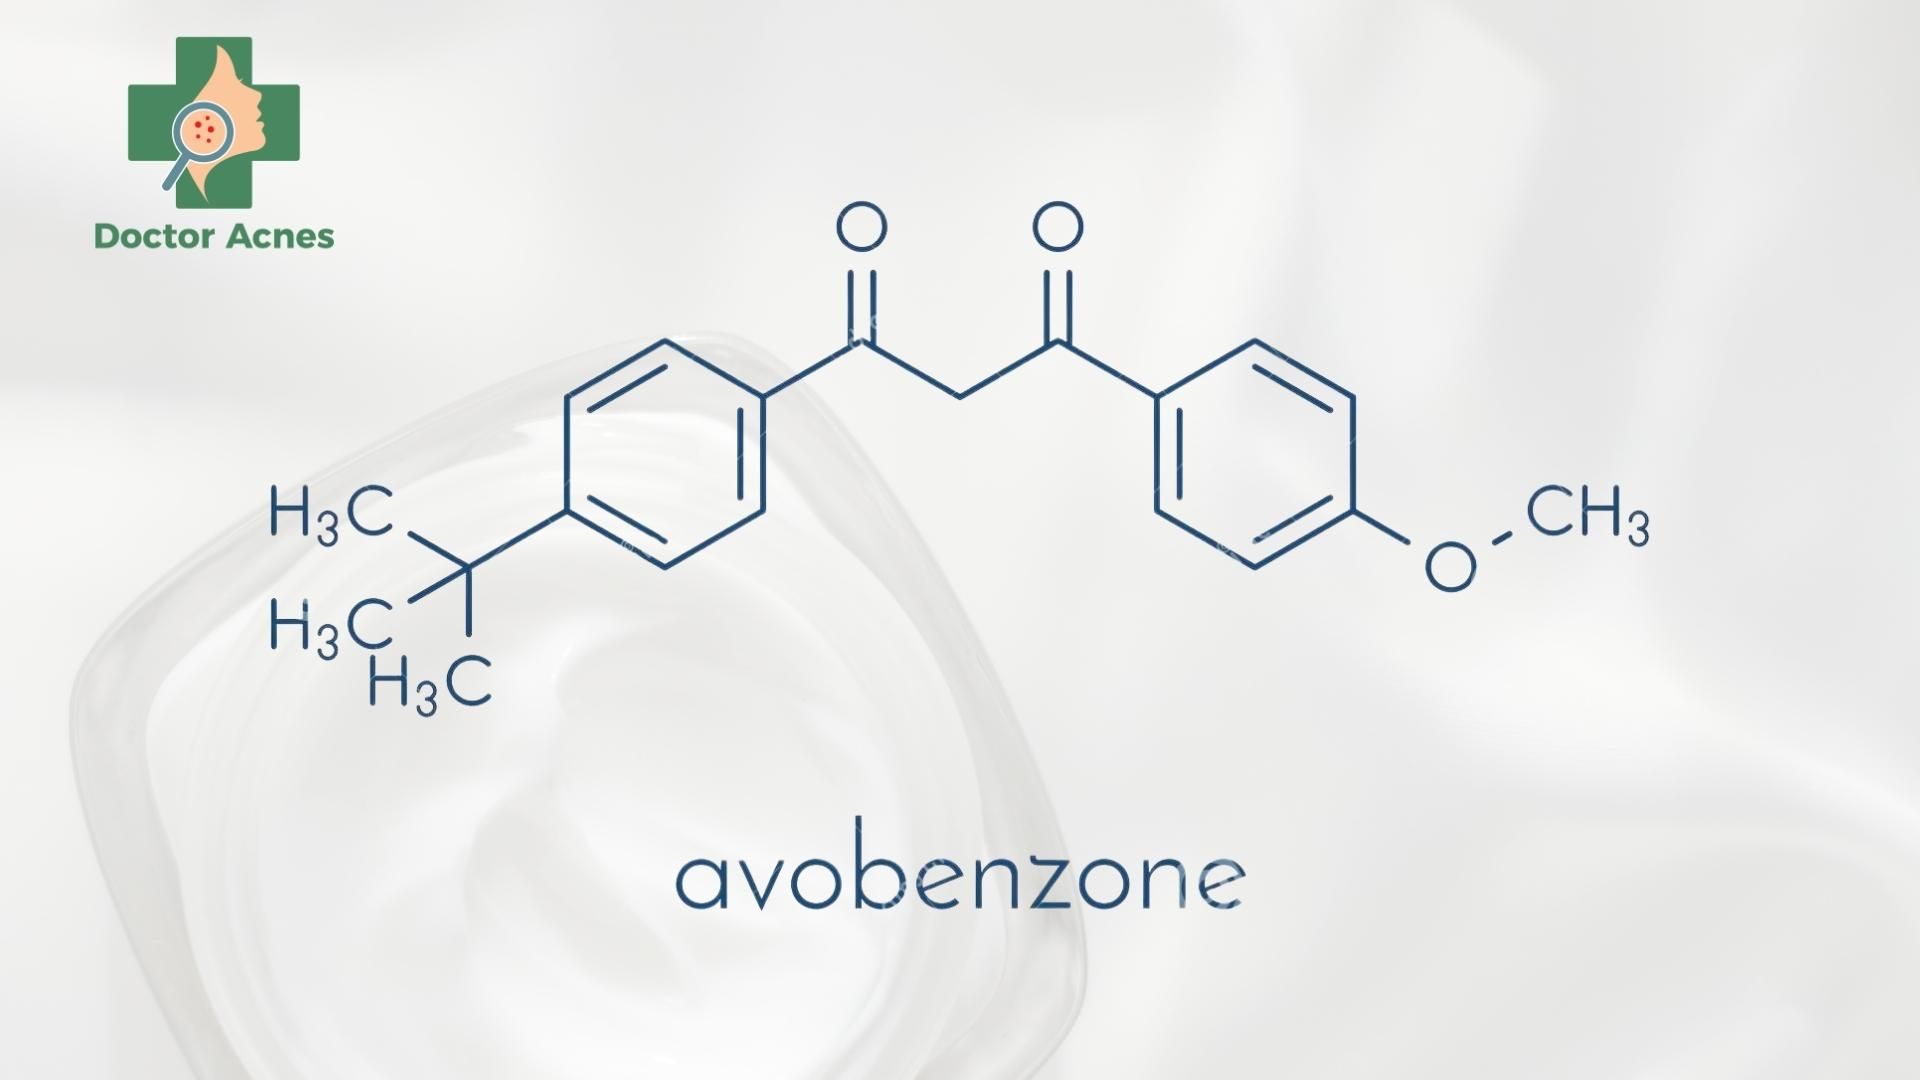 Avobenzone - Doctor Acnes